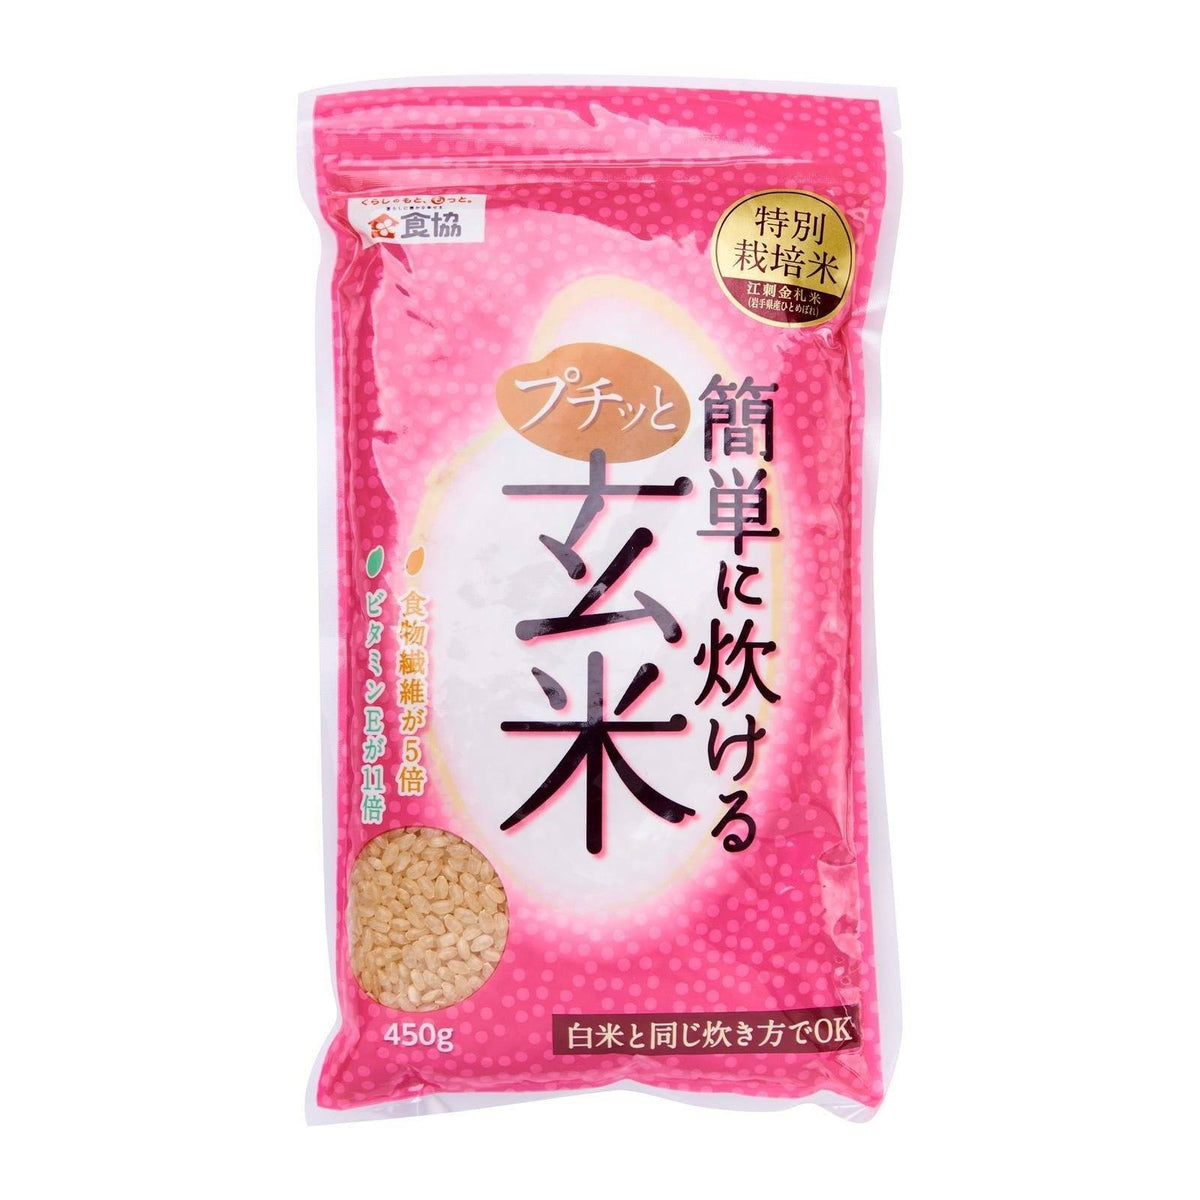 —　プチっと簡単炊ける玄米　Brown　Shokkyo　Premium　Genmai　Japanese　450G　Grocery　Rice　Honeydaes　Foods　Japan　Online